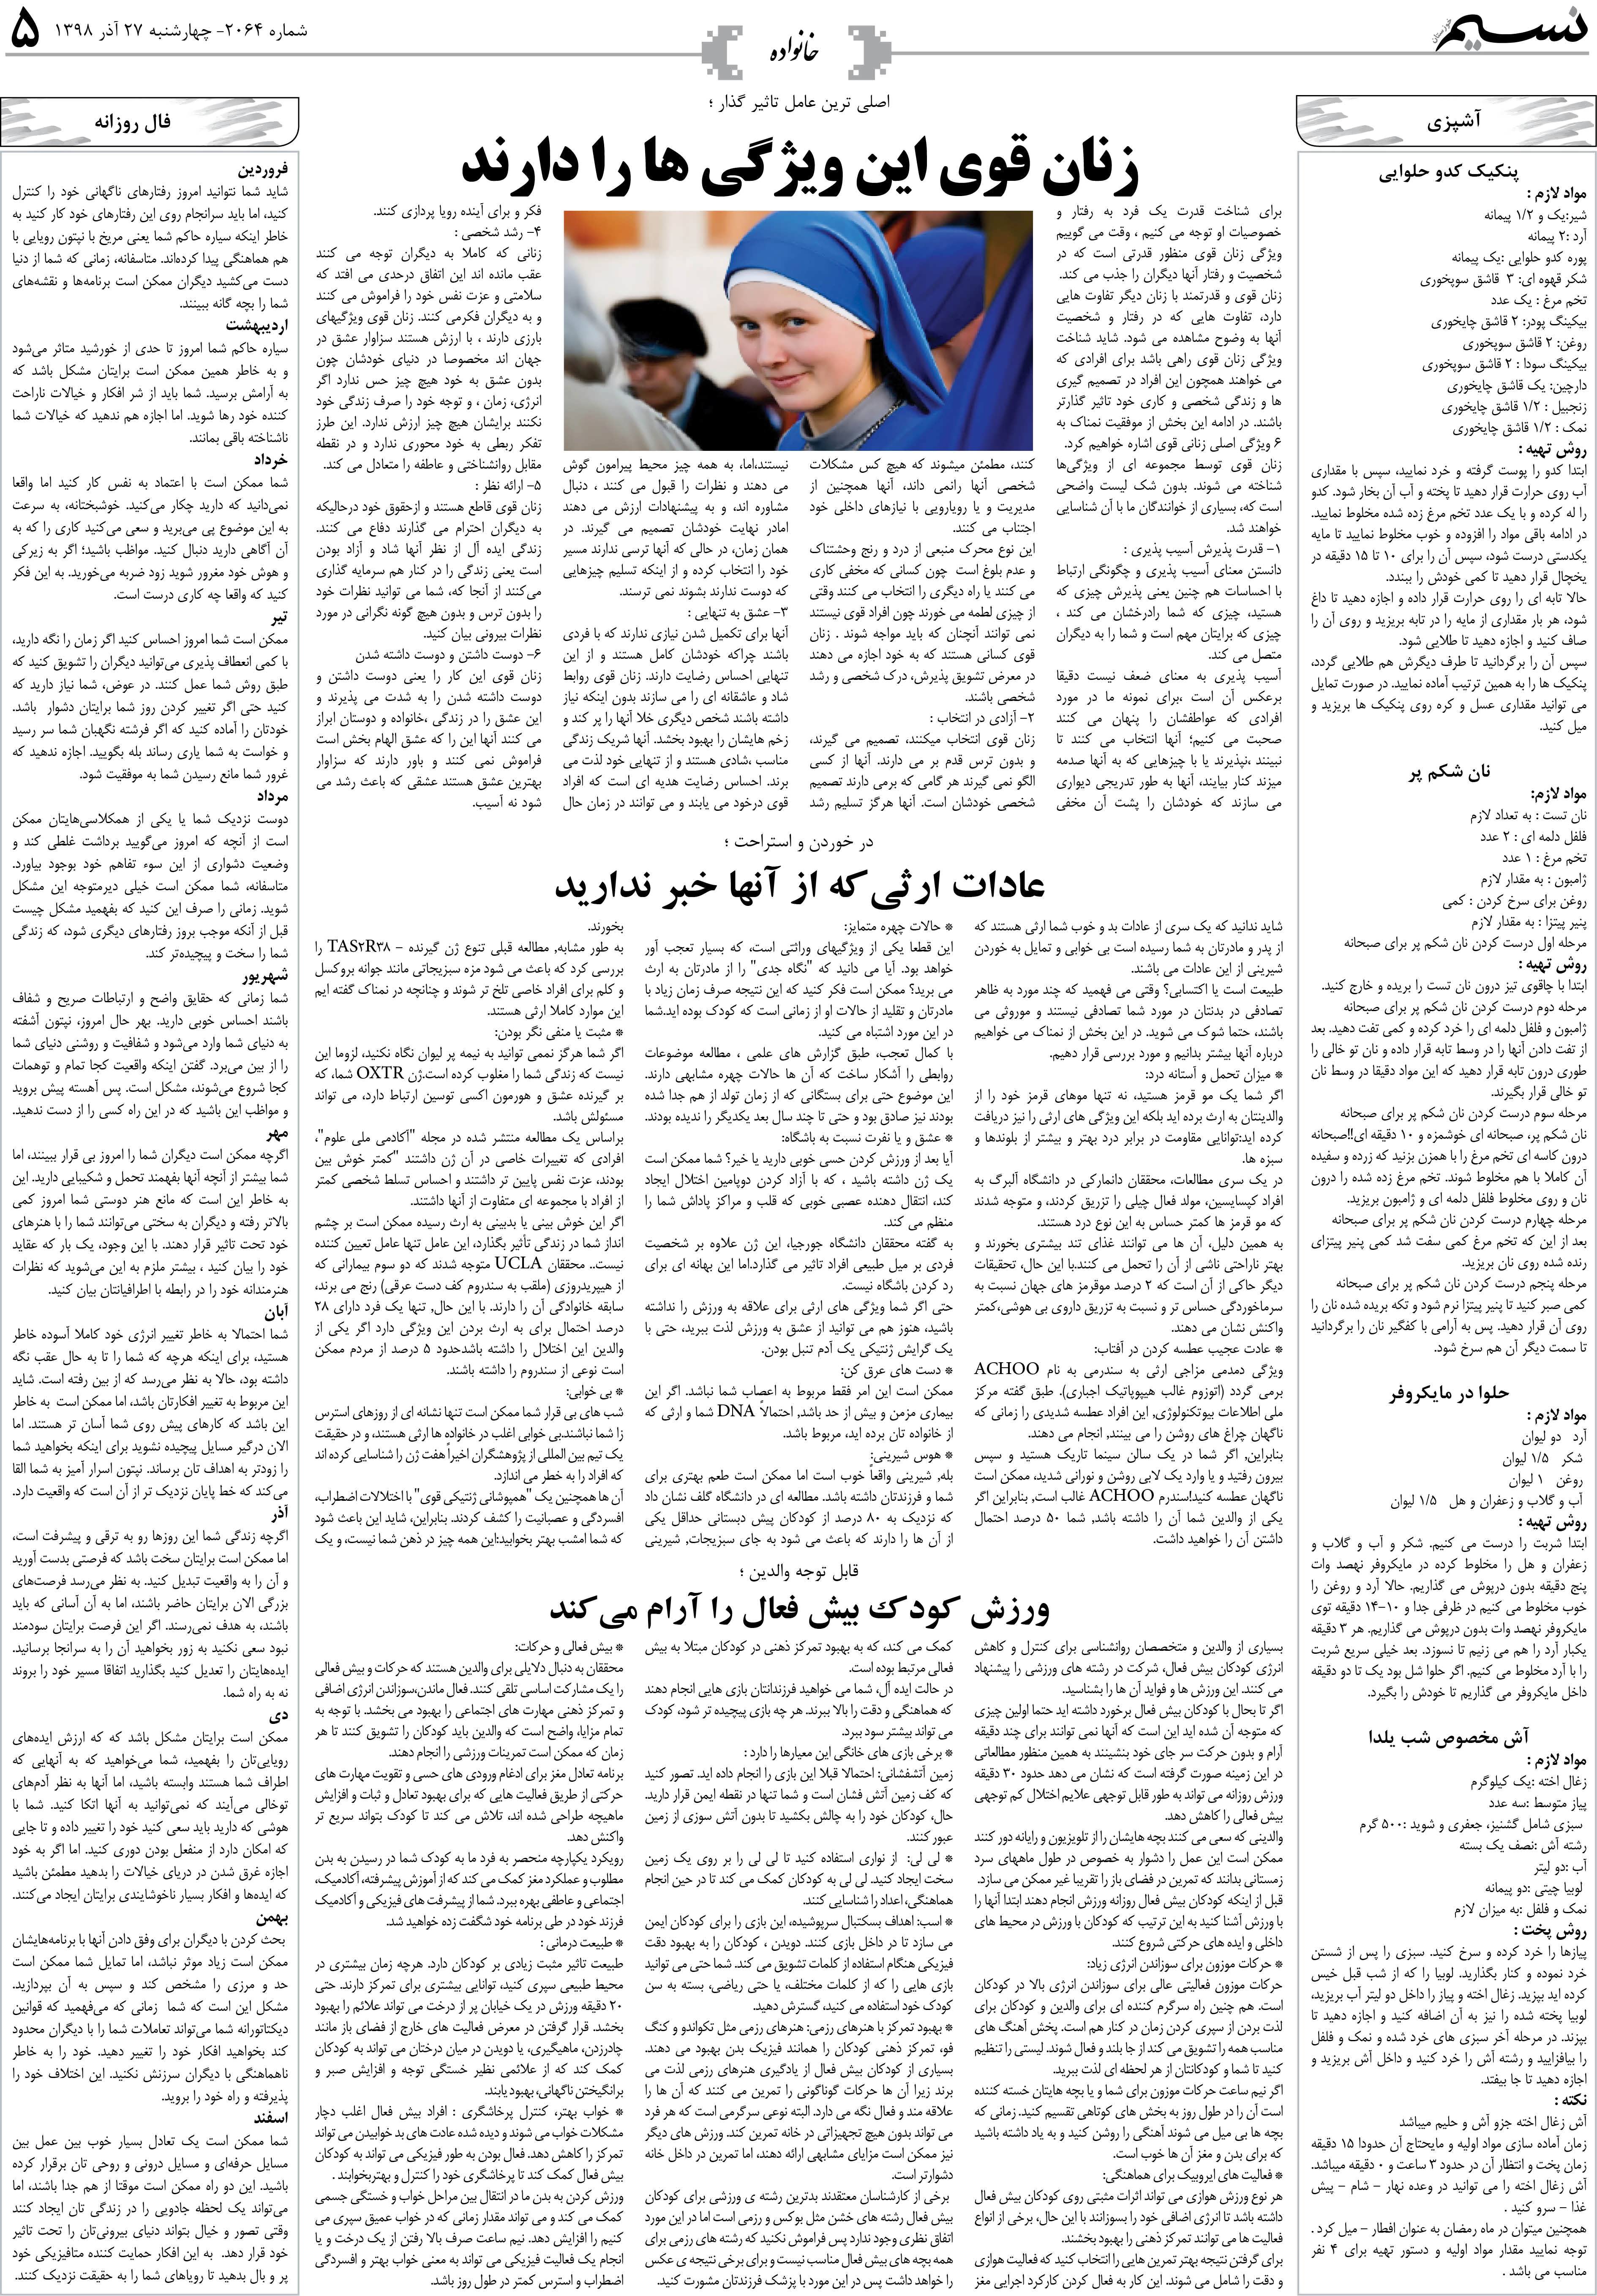 صفحه خانواده روزنامه نسیم شماره 2064